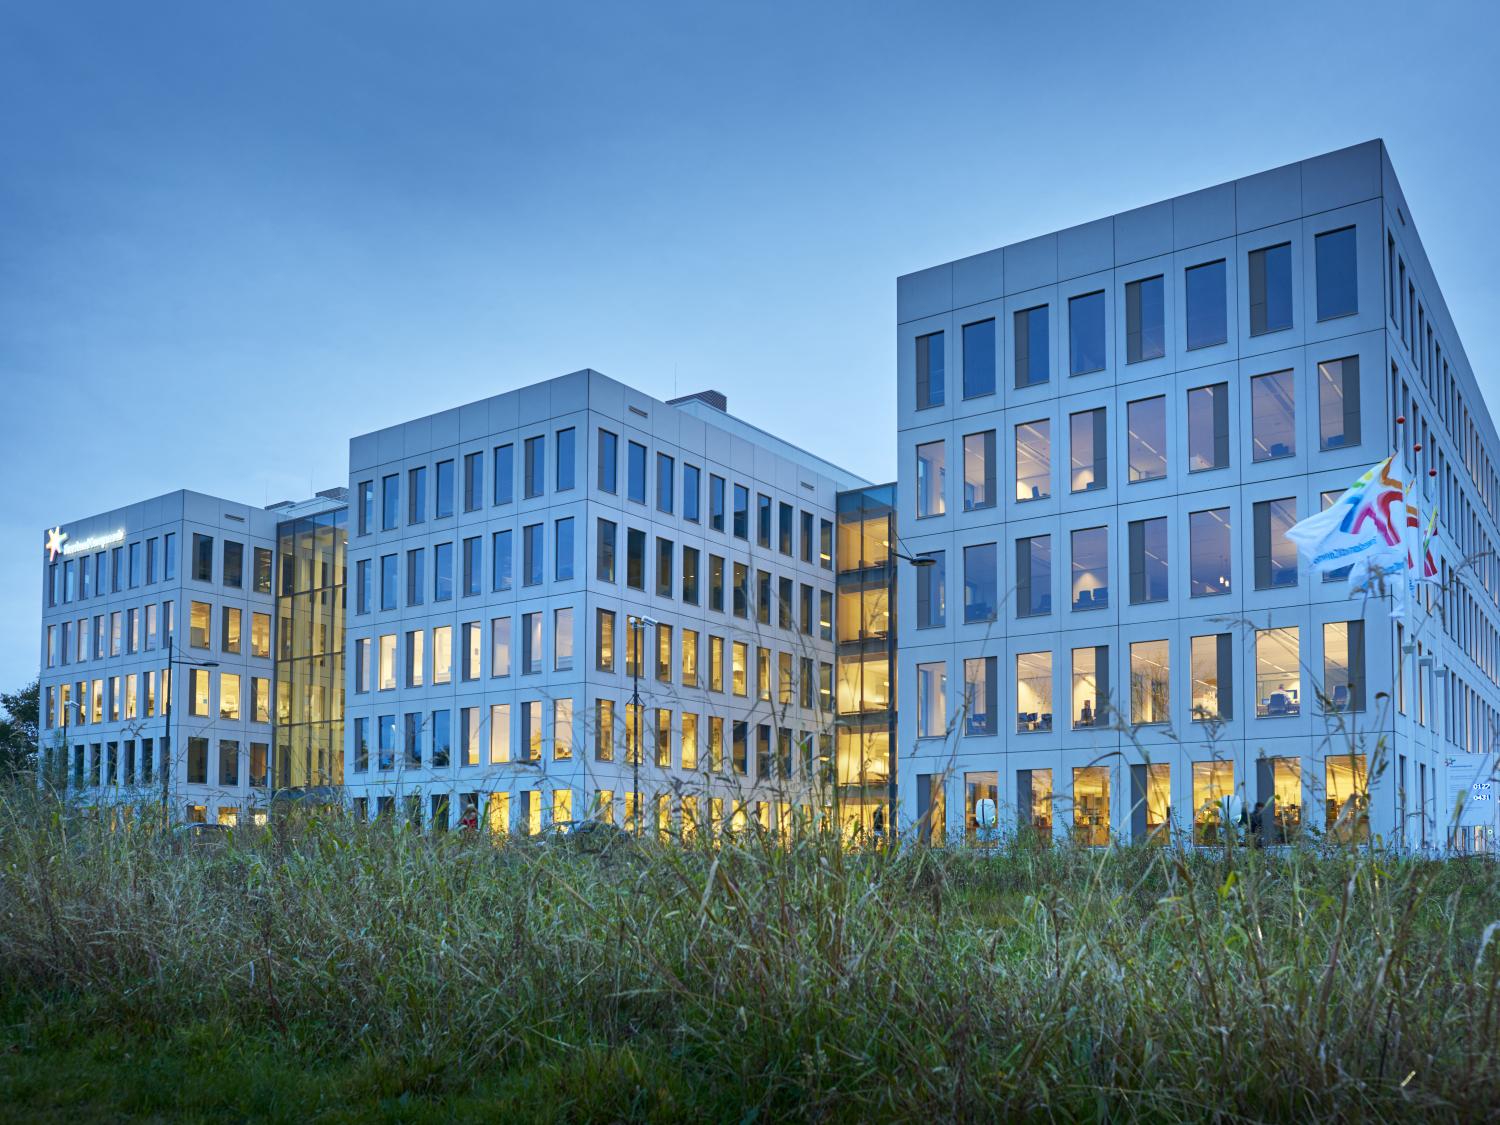 Innovation Centre Wageningen